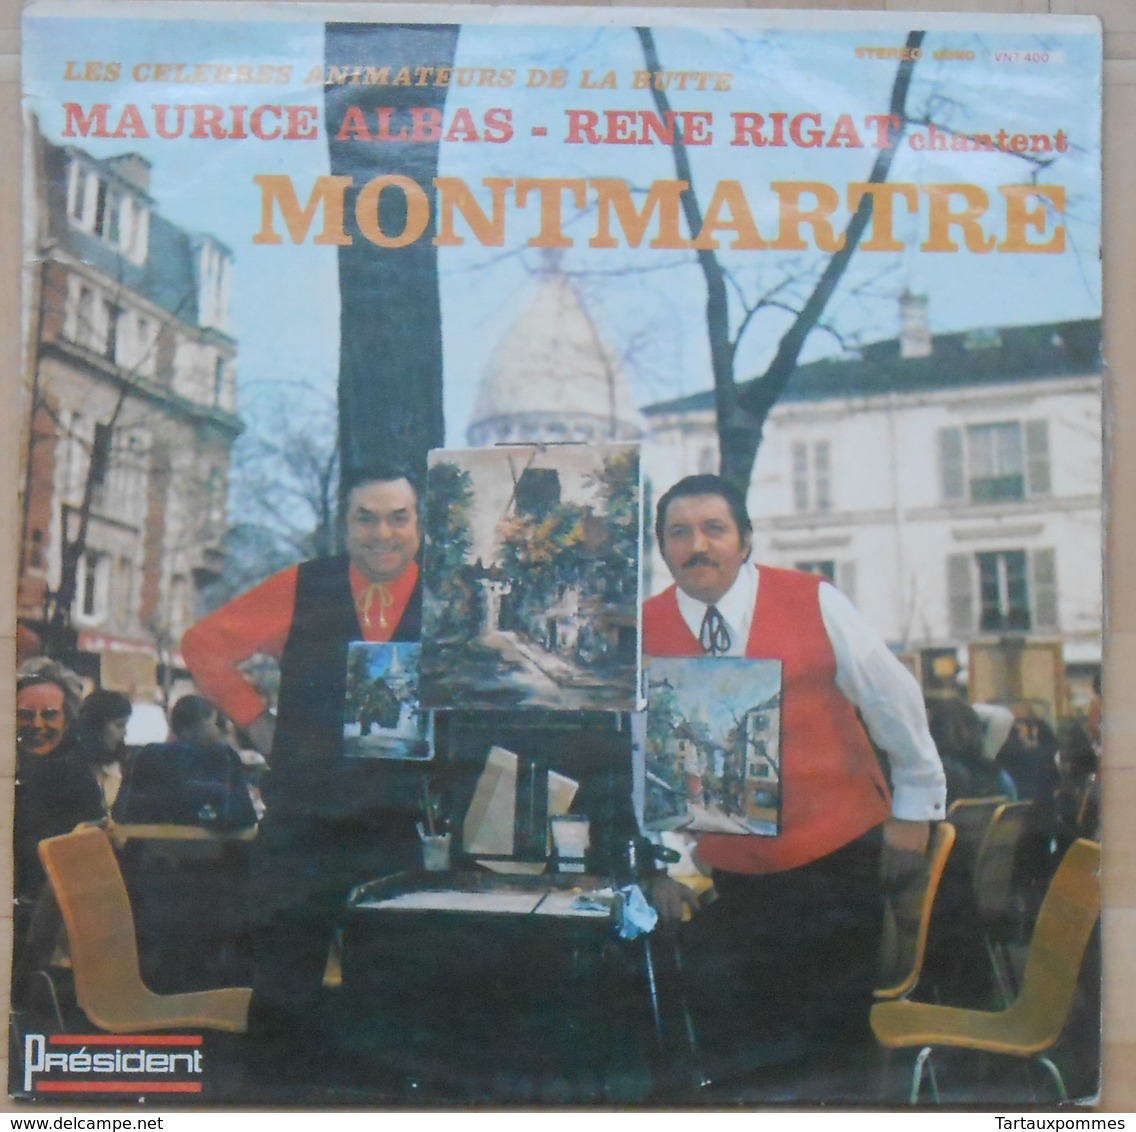 Les Célèbres Animateurs De La Butte Montmartre - Maurice Albas - René Rigat - 33T Dédicacé Par R. Rigat - Humour, Cabaret